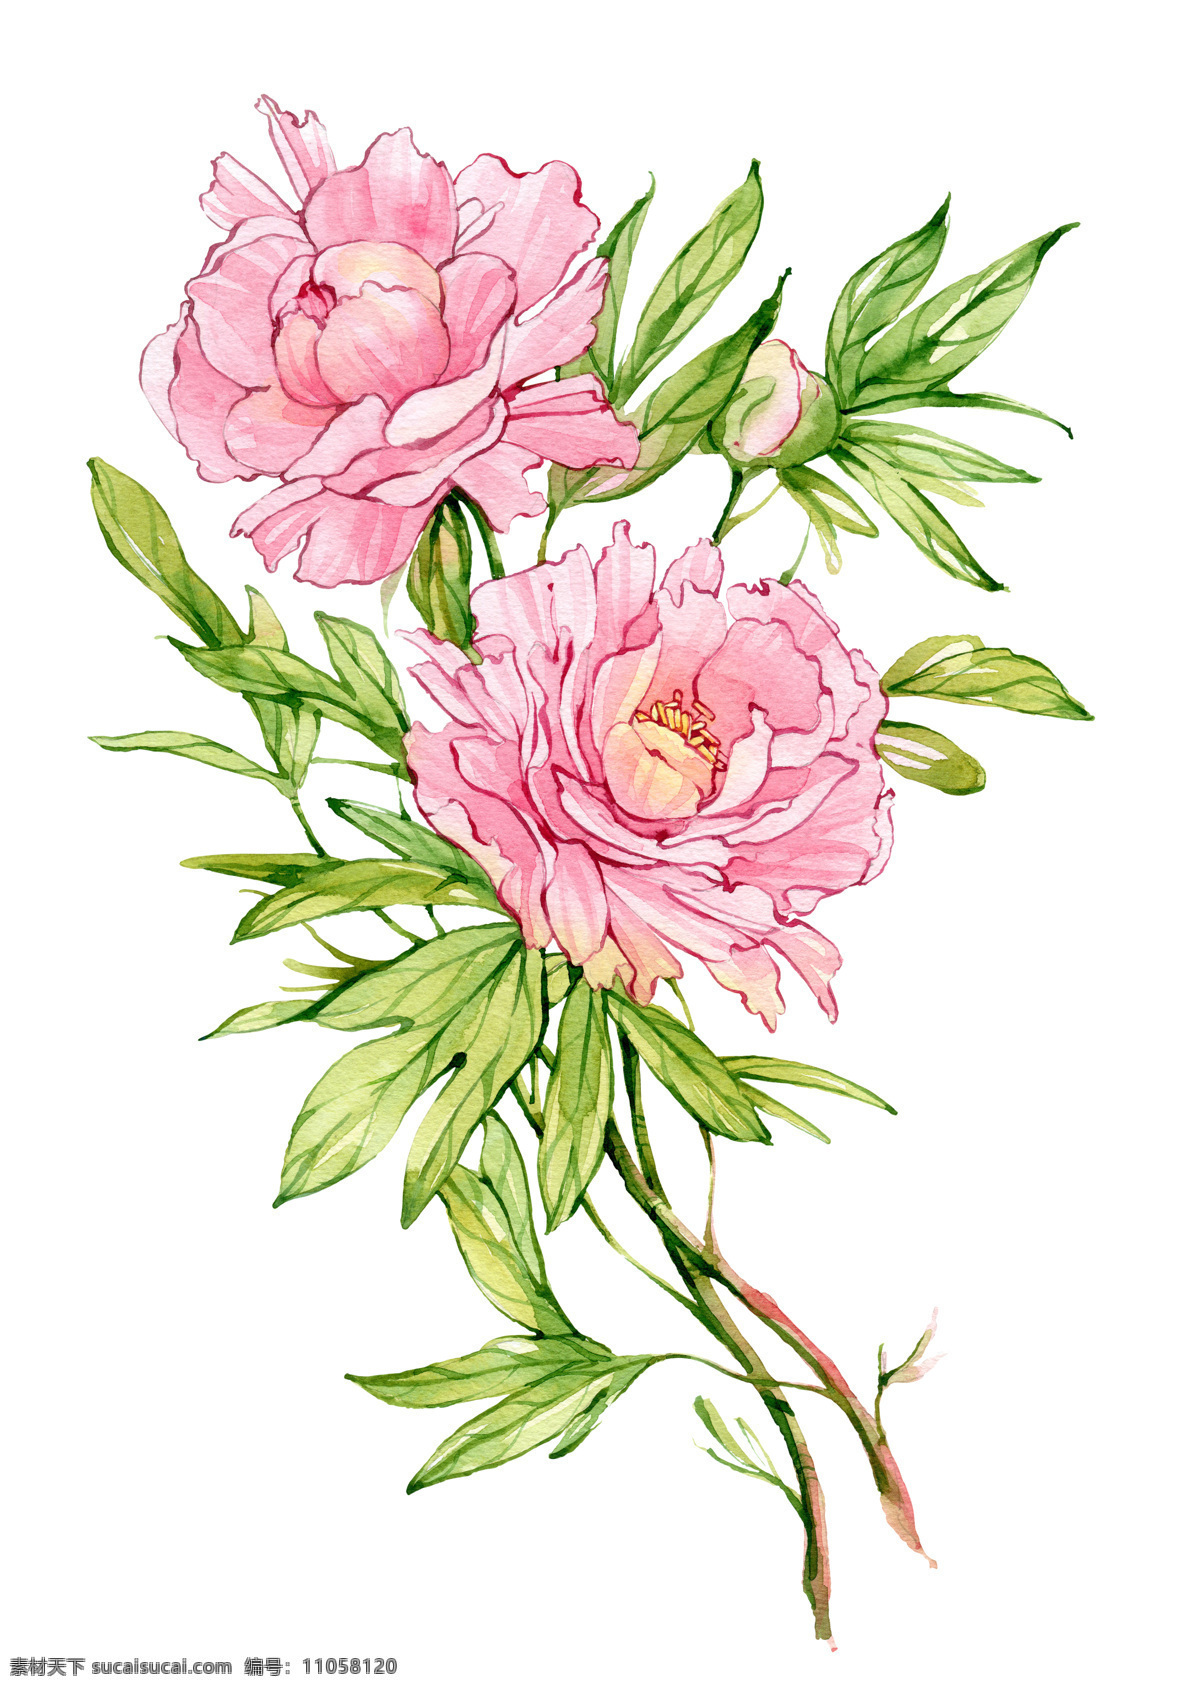 手绘 绿叶 粉色 花朵 叶子 粉色花朵 手绘花朵 手绘图案 植物 花卉 书画文字 文化艺术